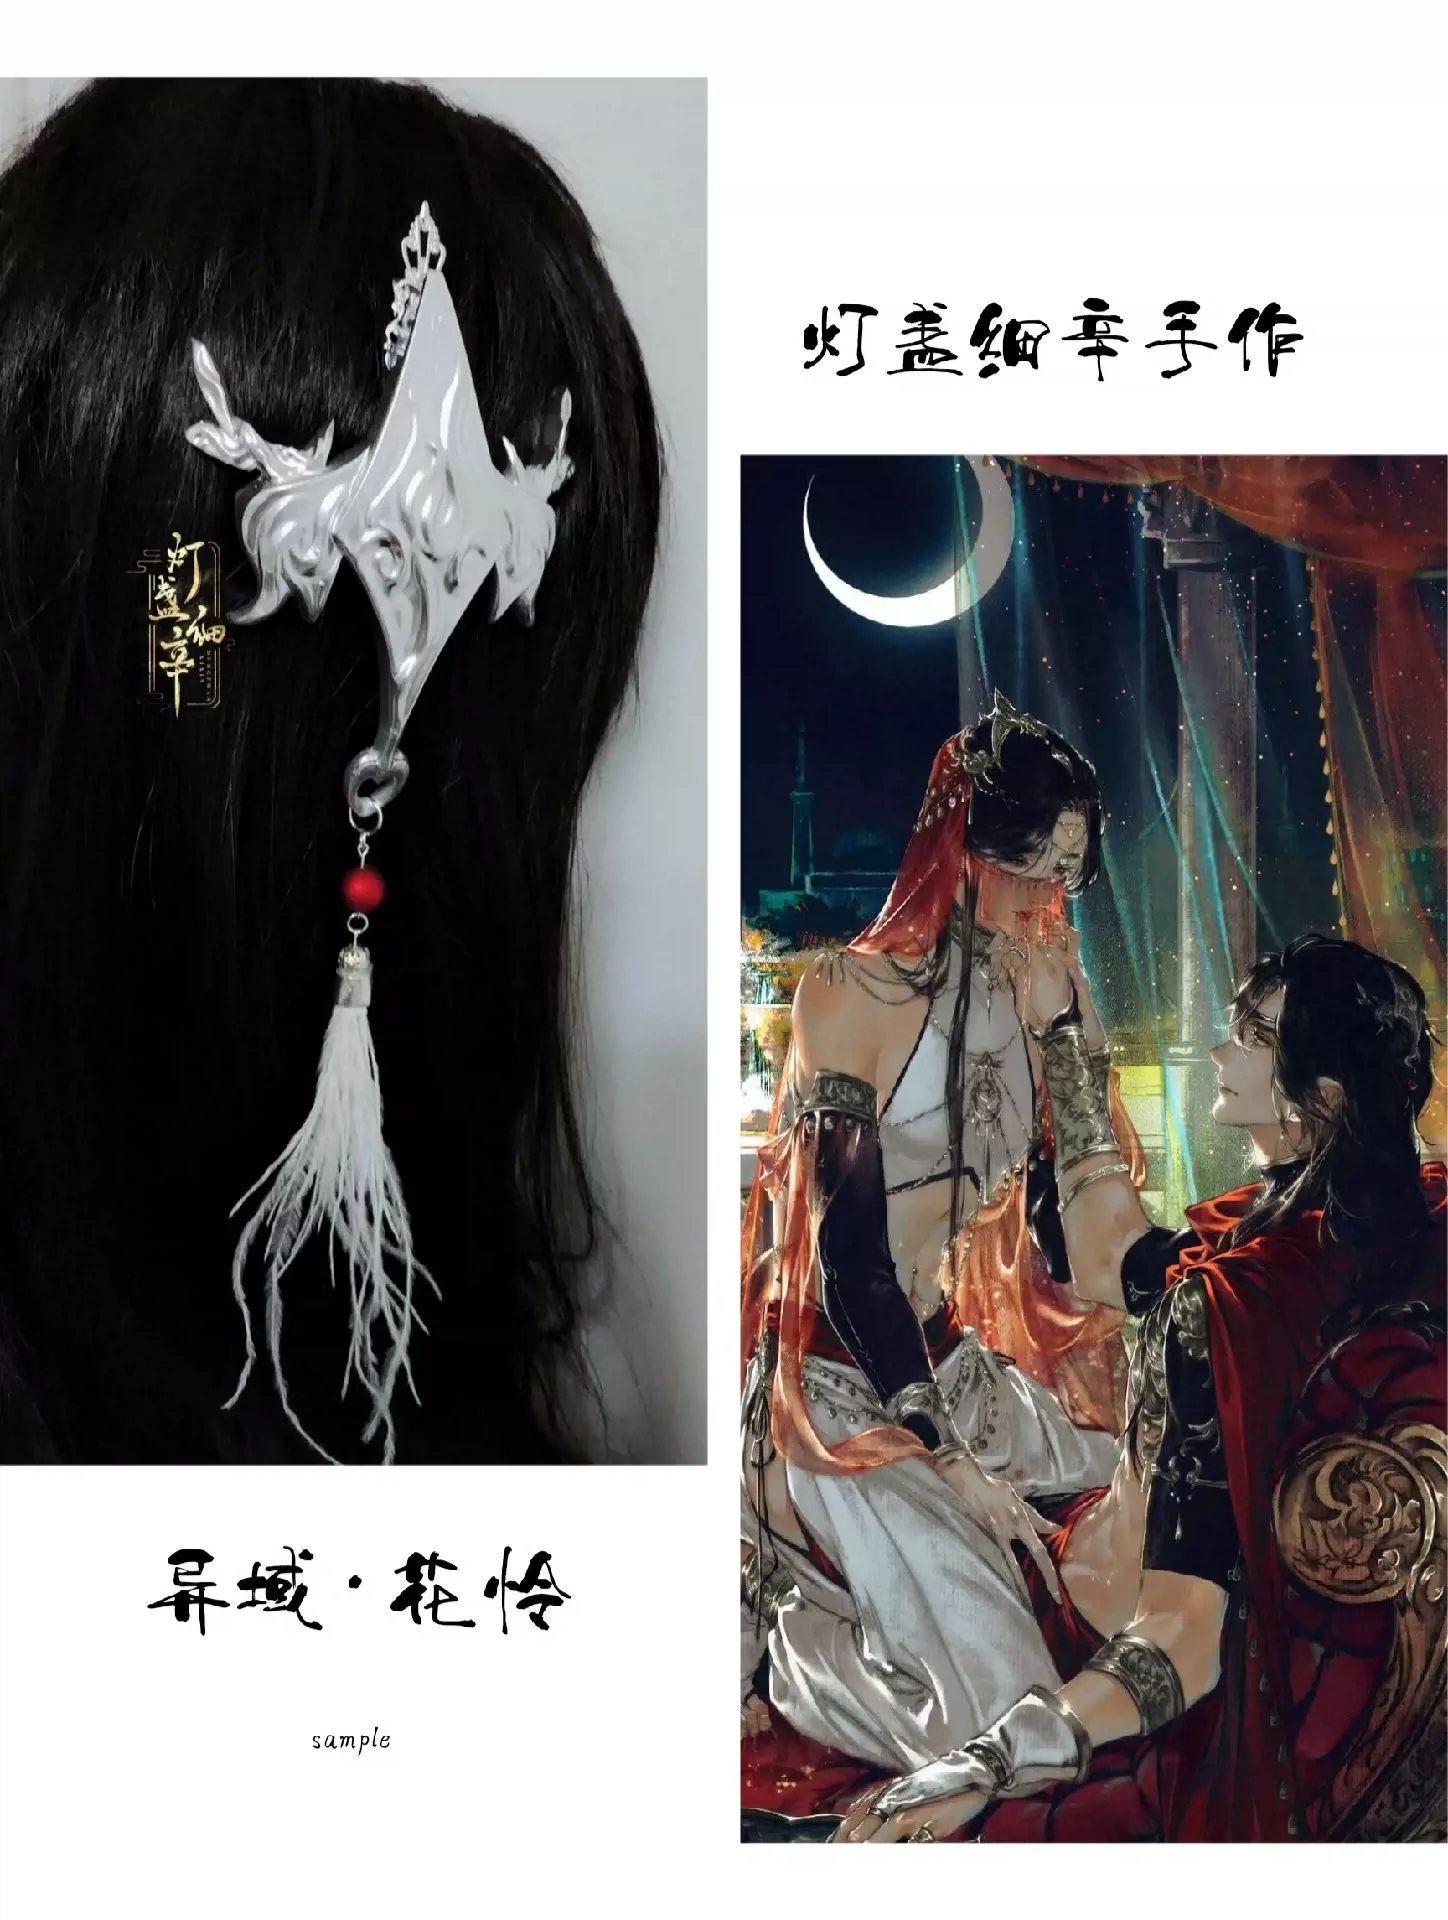 【在售】DZh燈盞家「異域·夾」天官賜福花城cos衍生頭飾後-Taobao